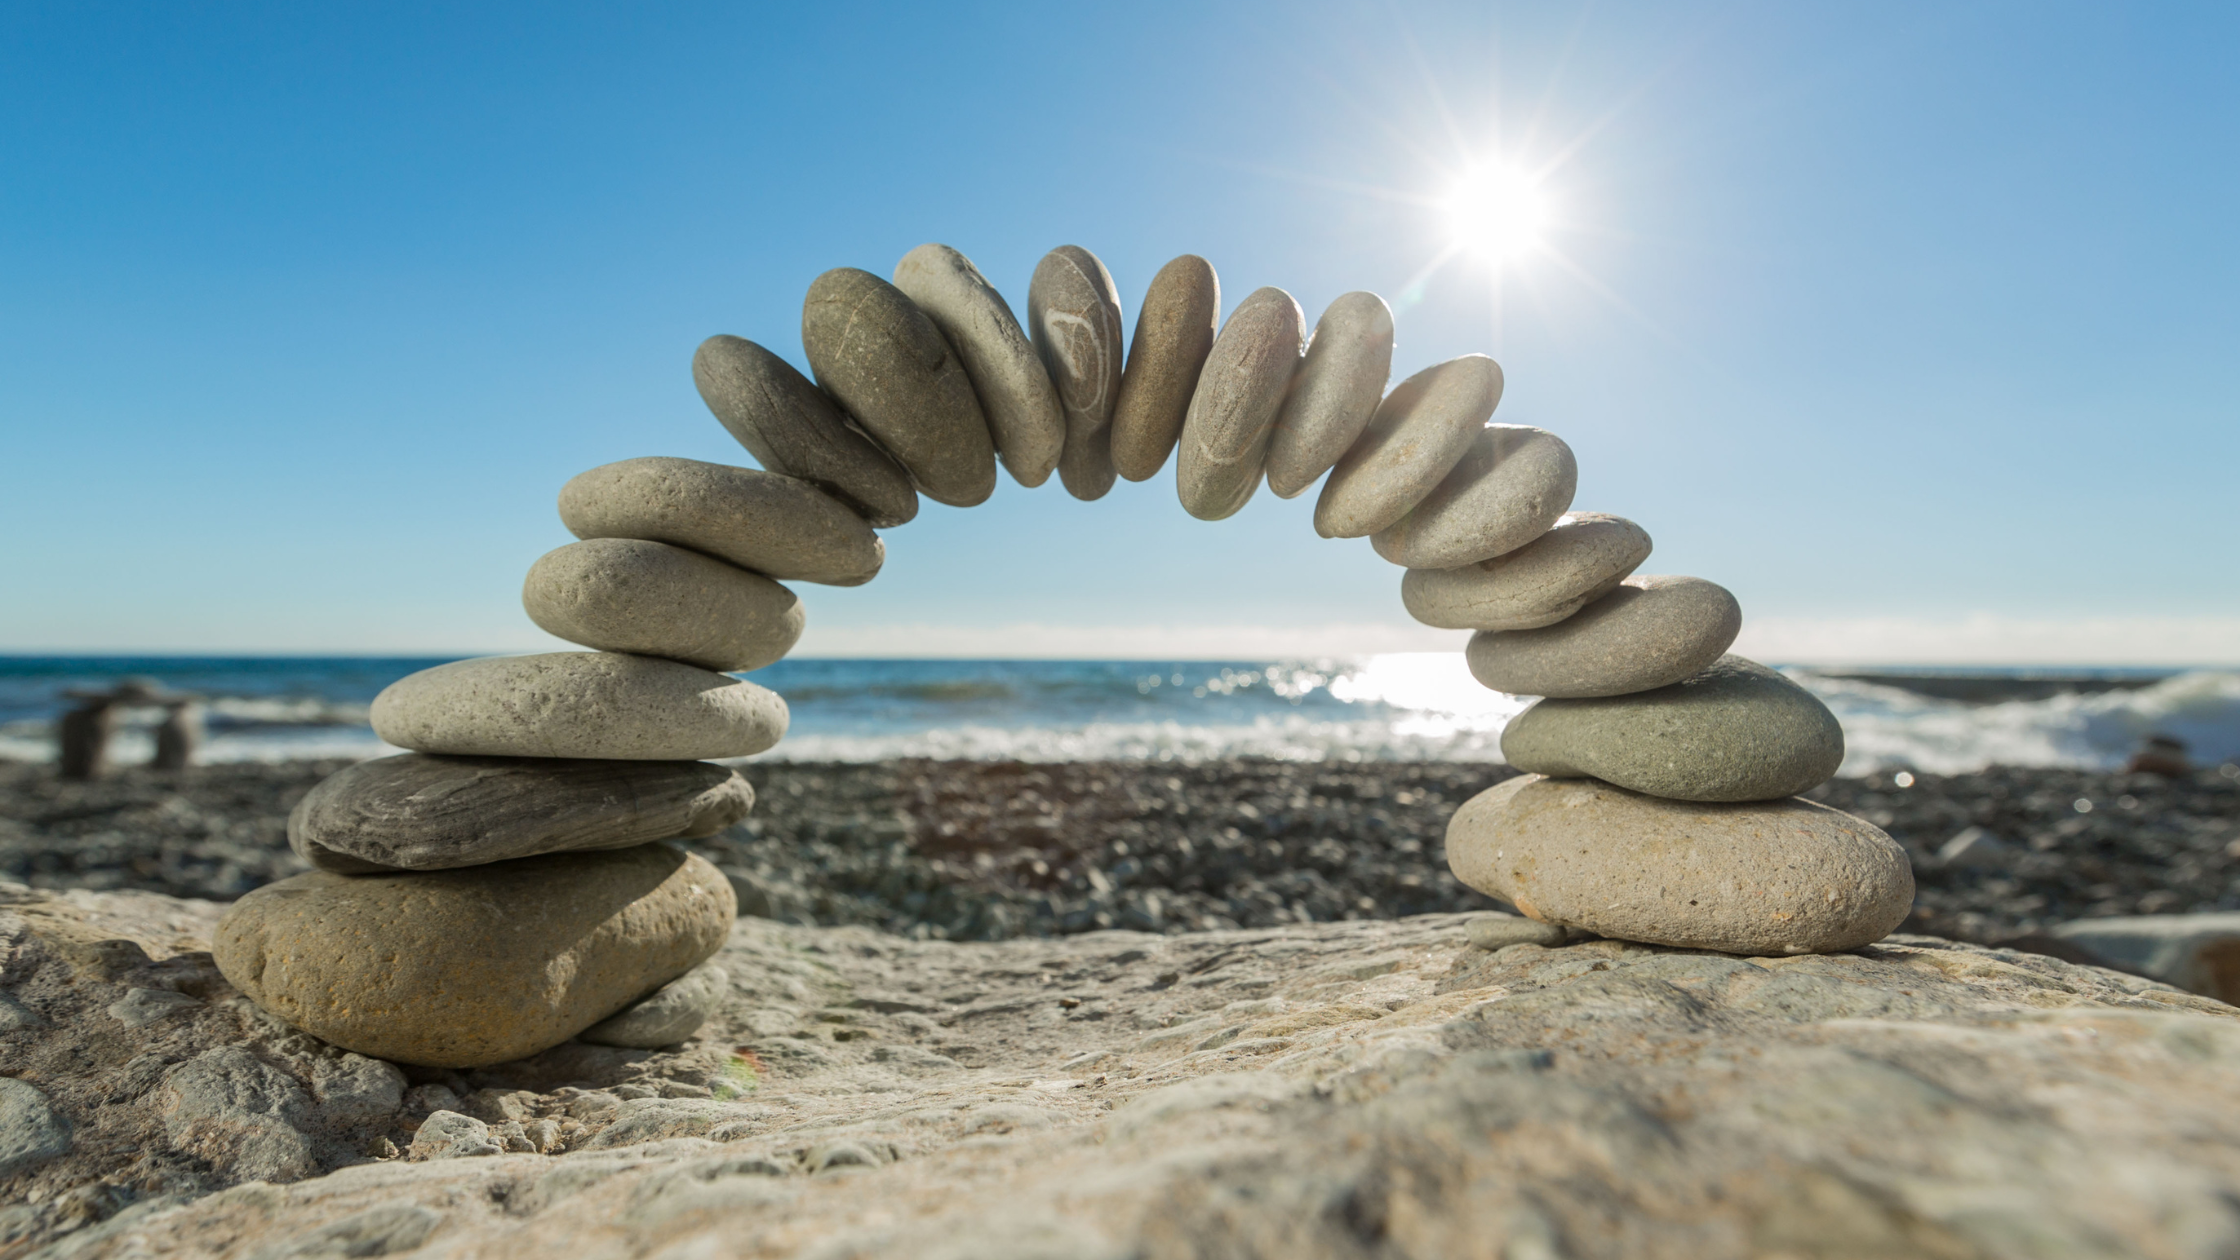 balanced stones on a beach